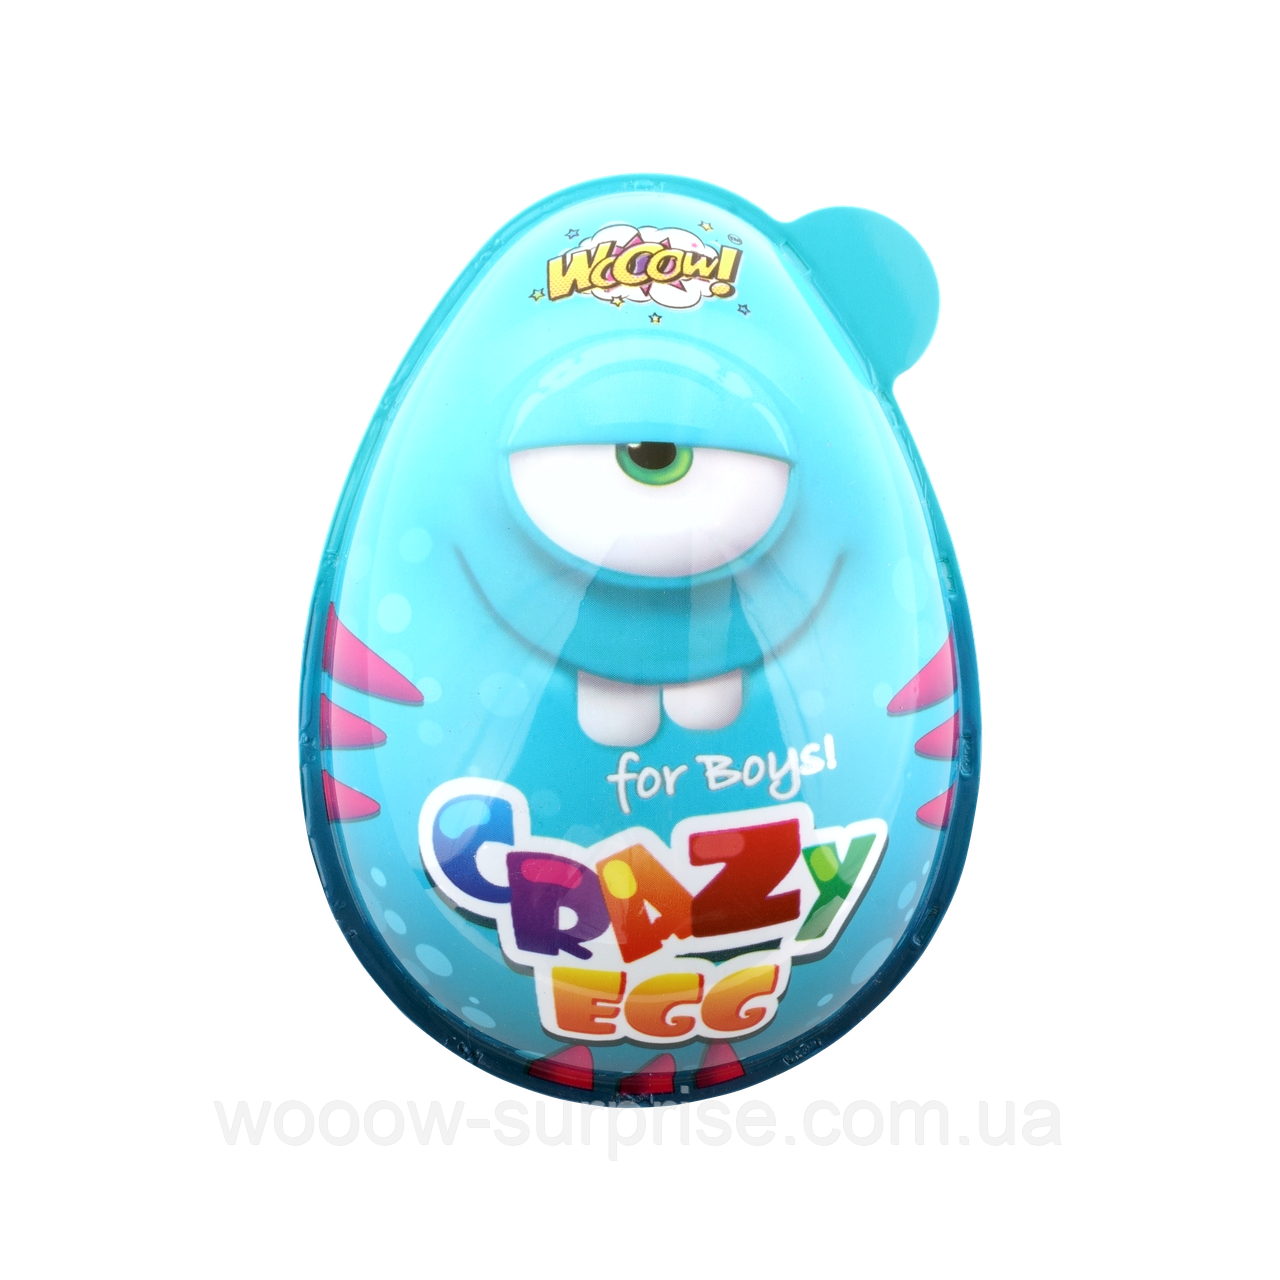 Яйце пластикове з цукерками та сюрпризом для хлопчика Crazy egg